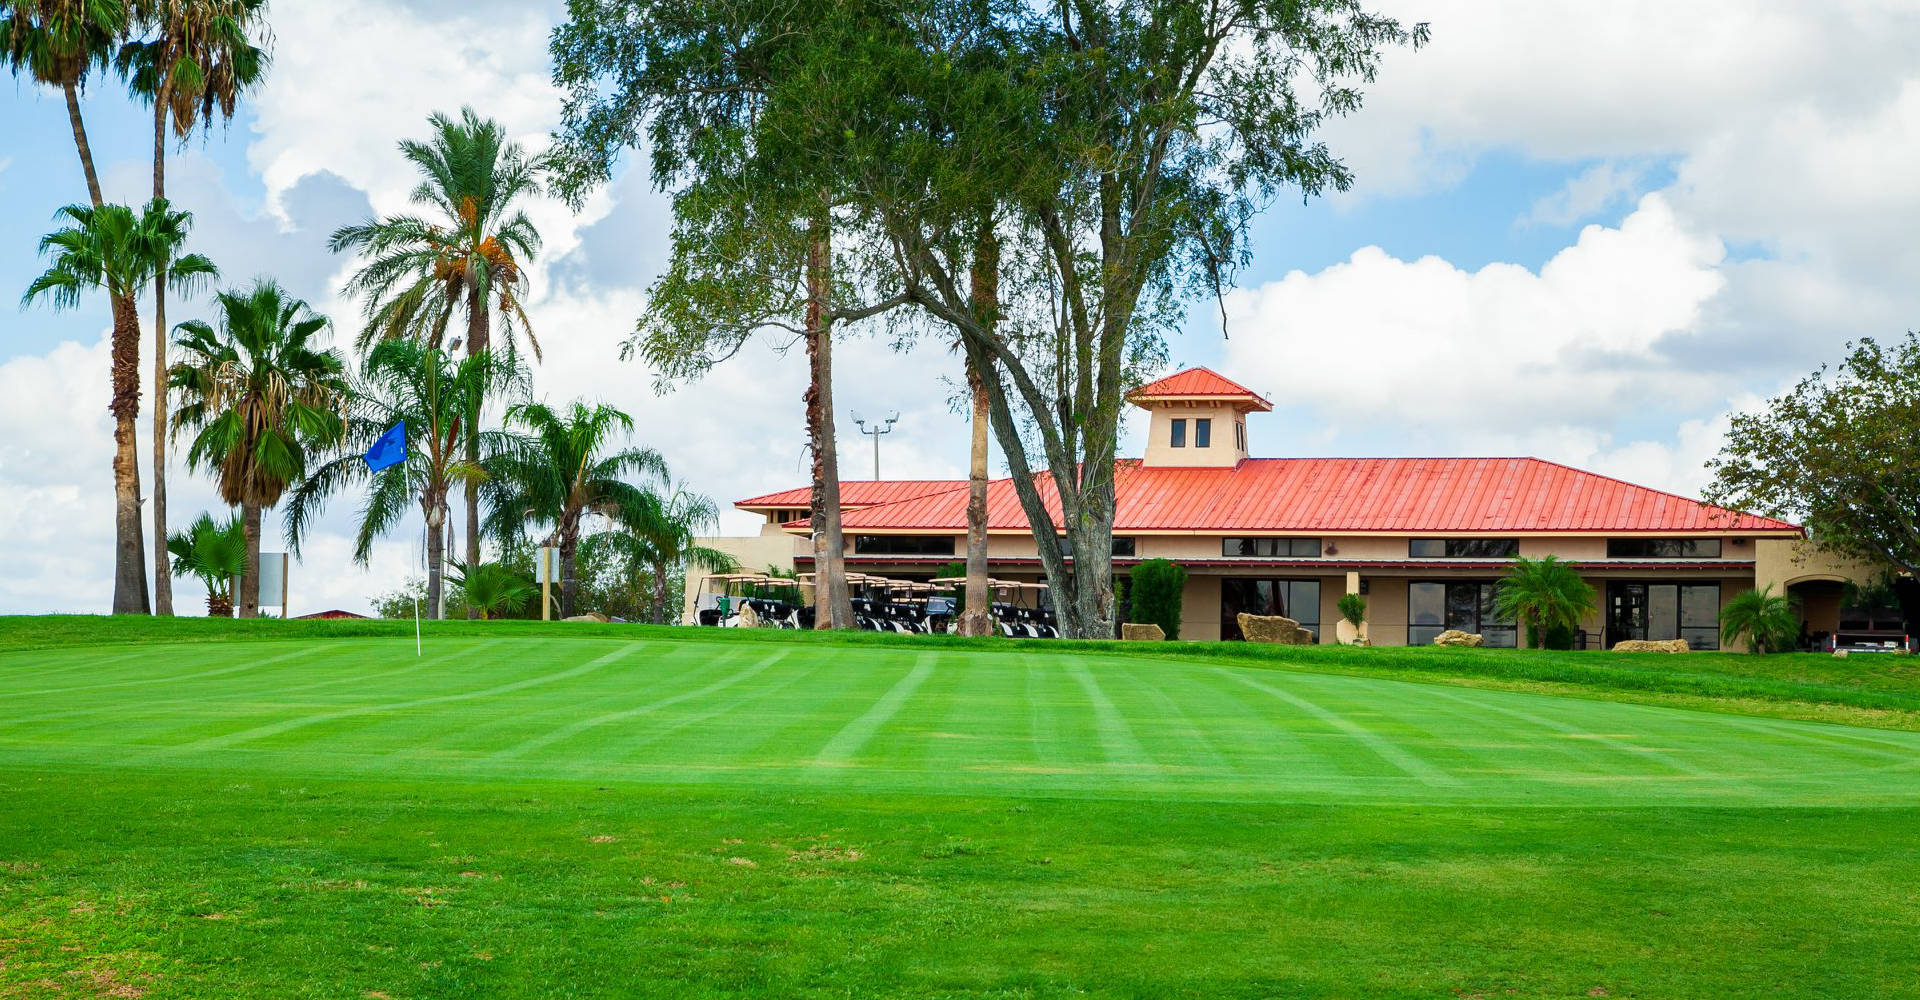 Casa Blanca Golf Course